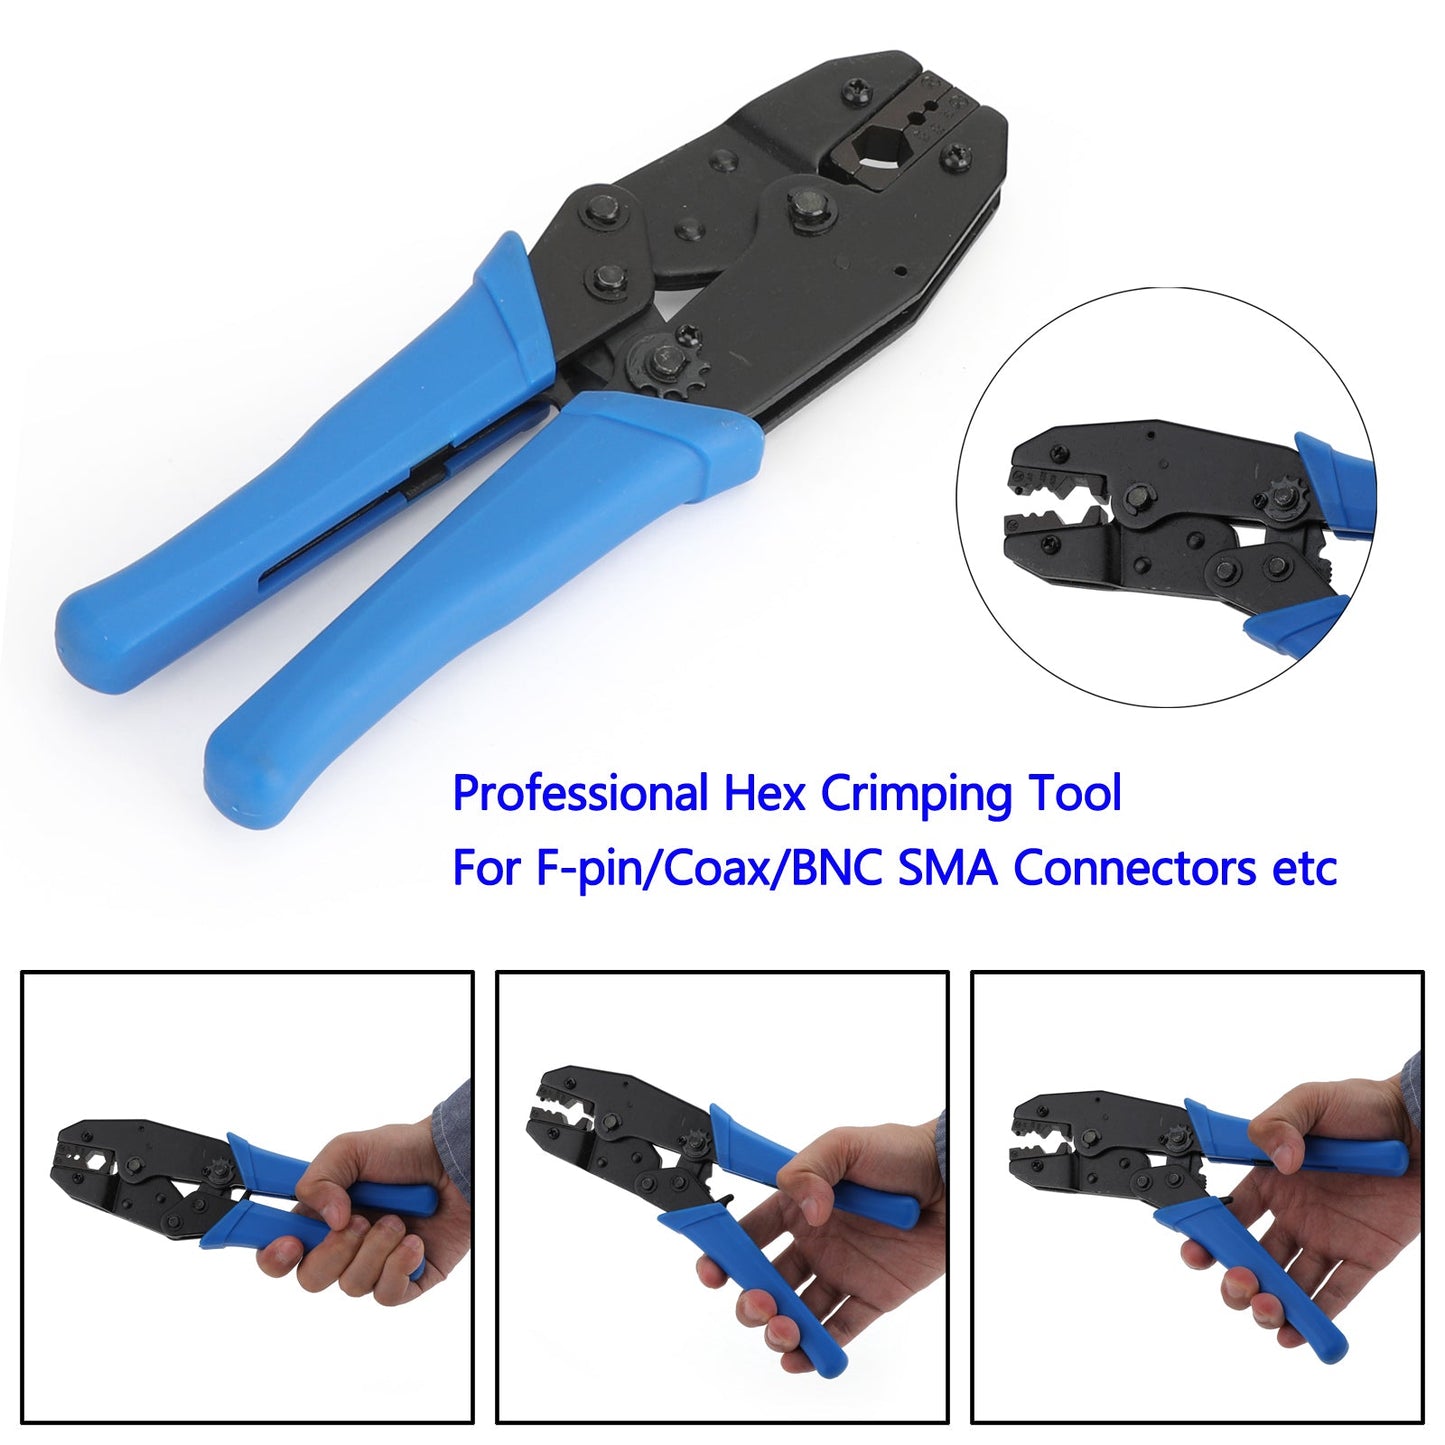 9" Professional Hex Crimping Tool For F-pin/Coax/BNC SMA Connectors etc.